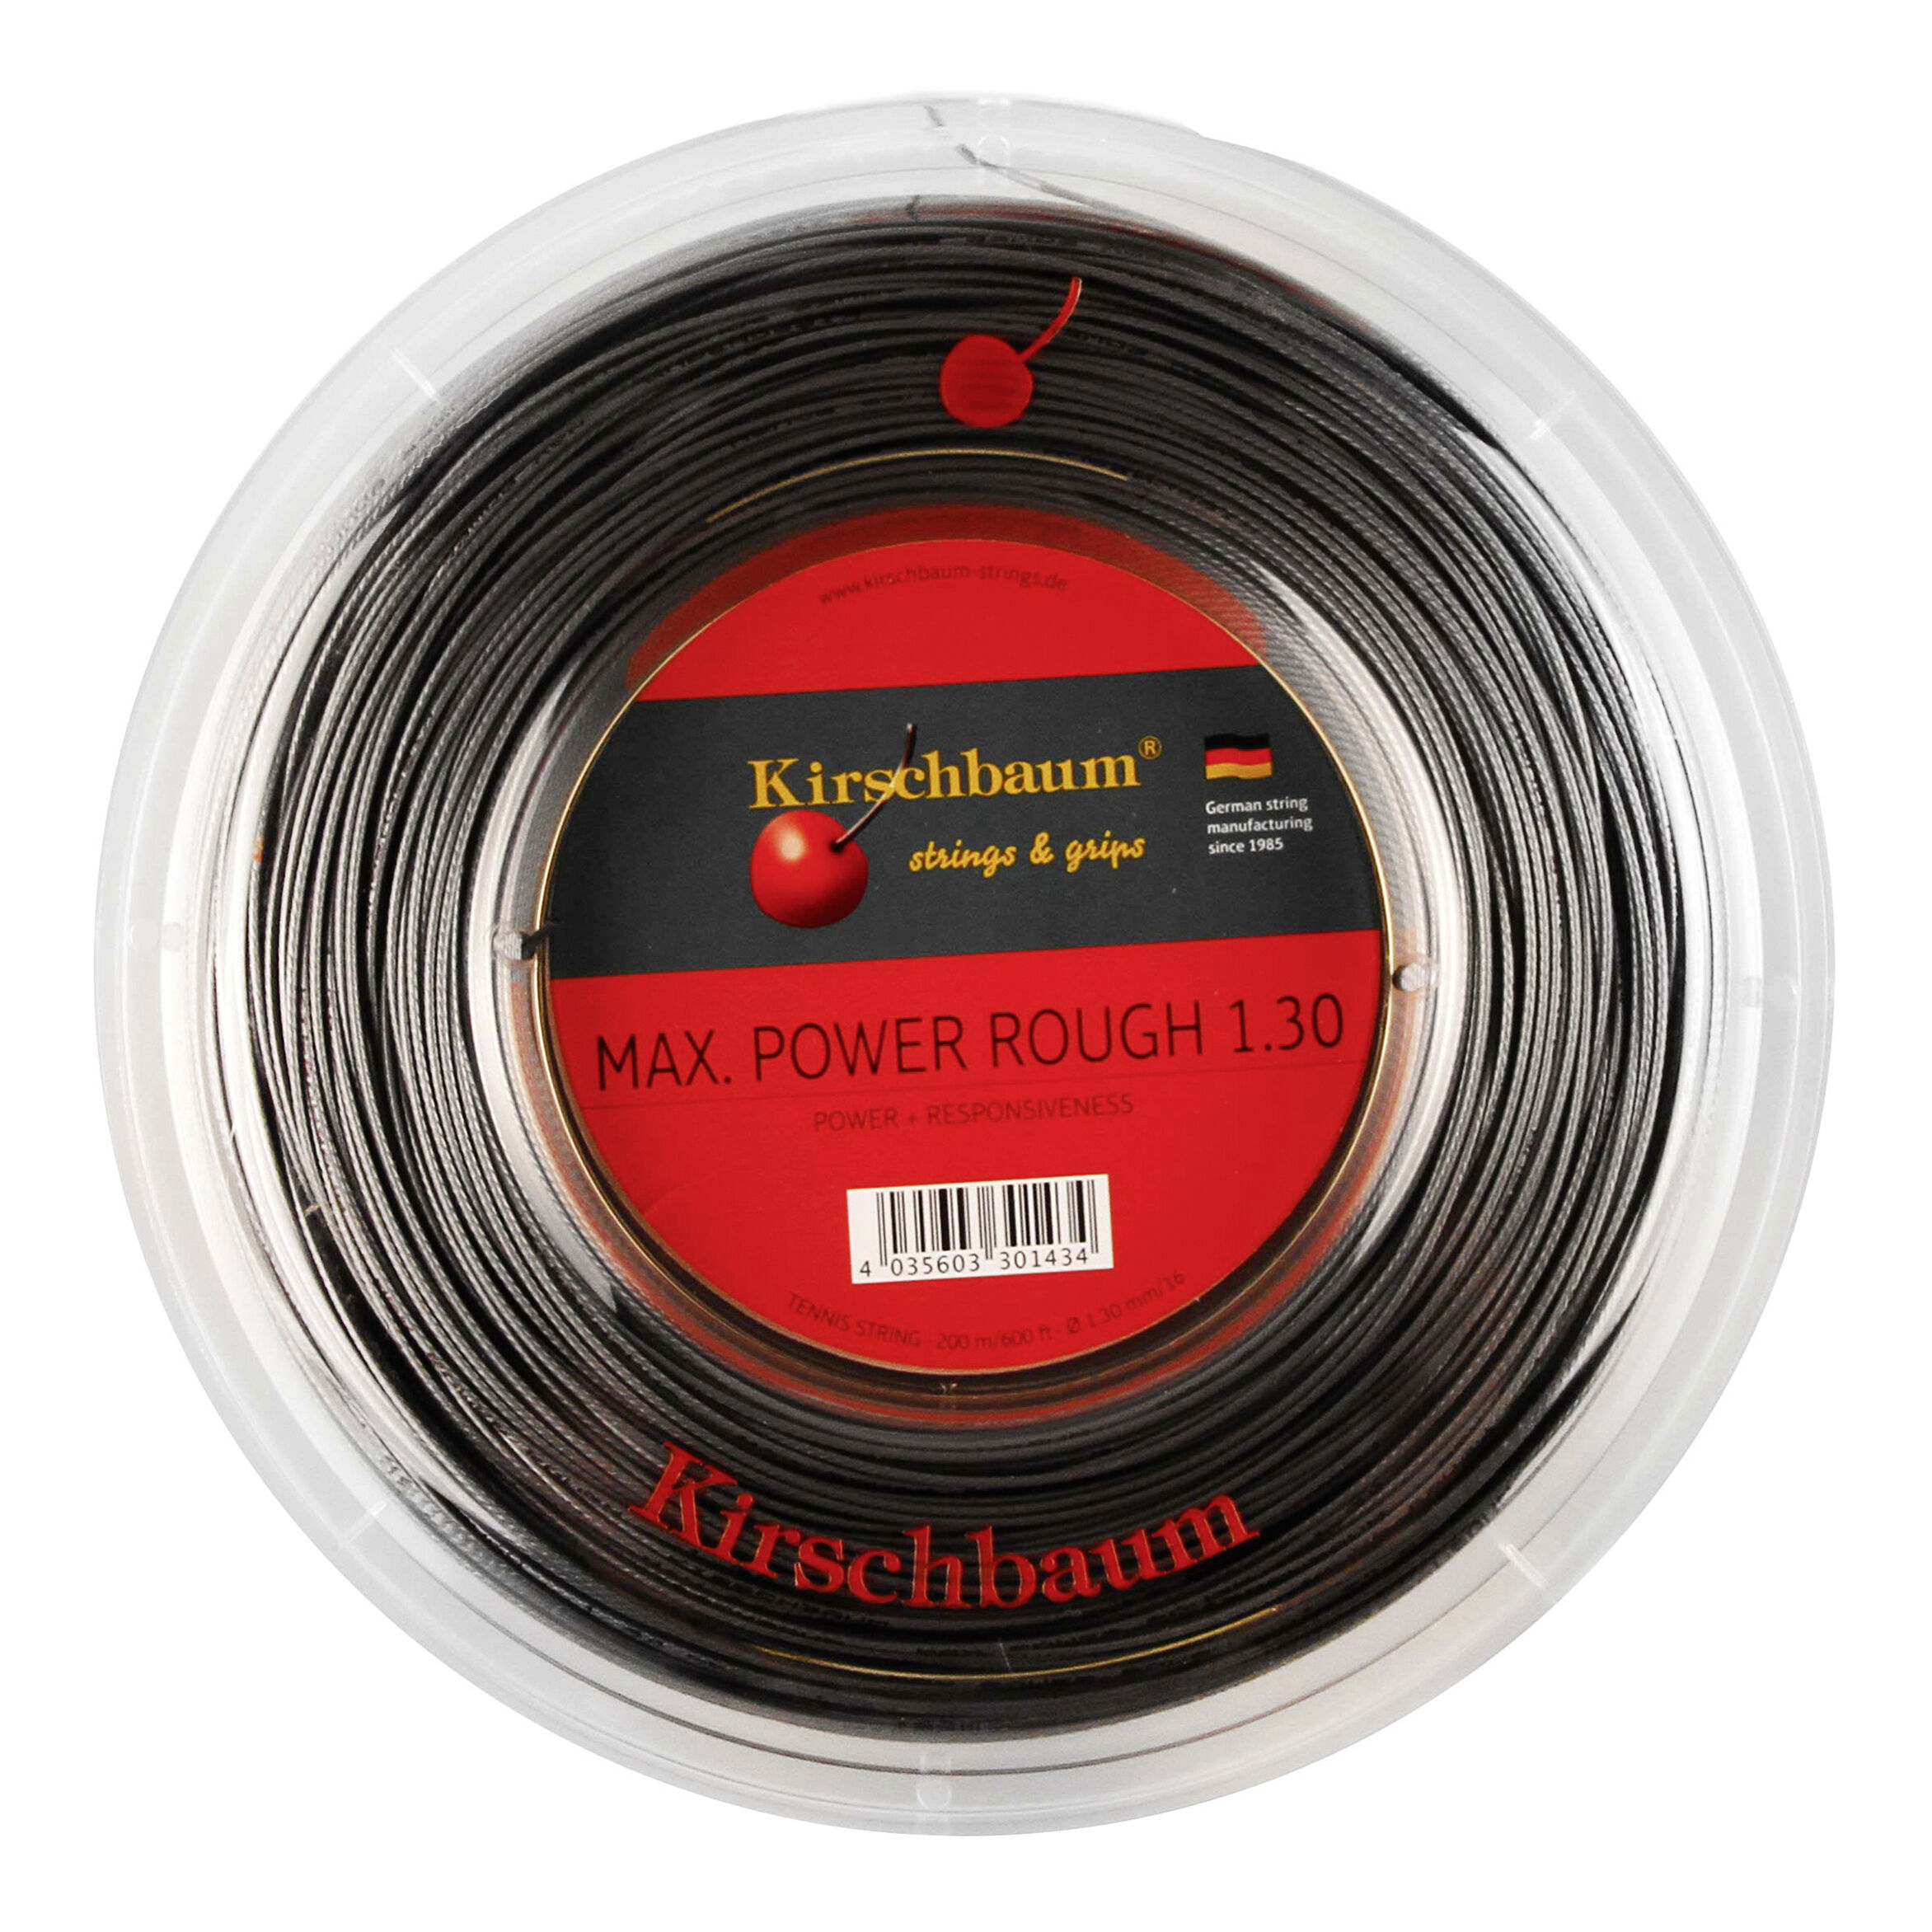 Kirschbaum Saitenrolle Max Power, Anthrazit, 1,30 x 200m, 010526021810 